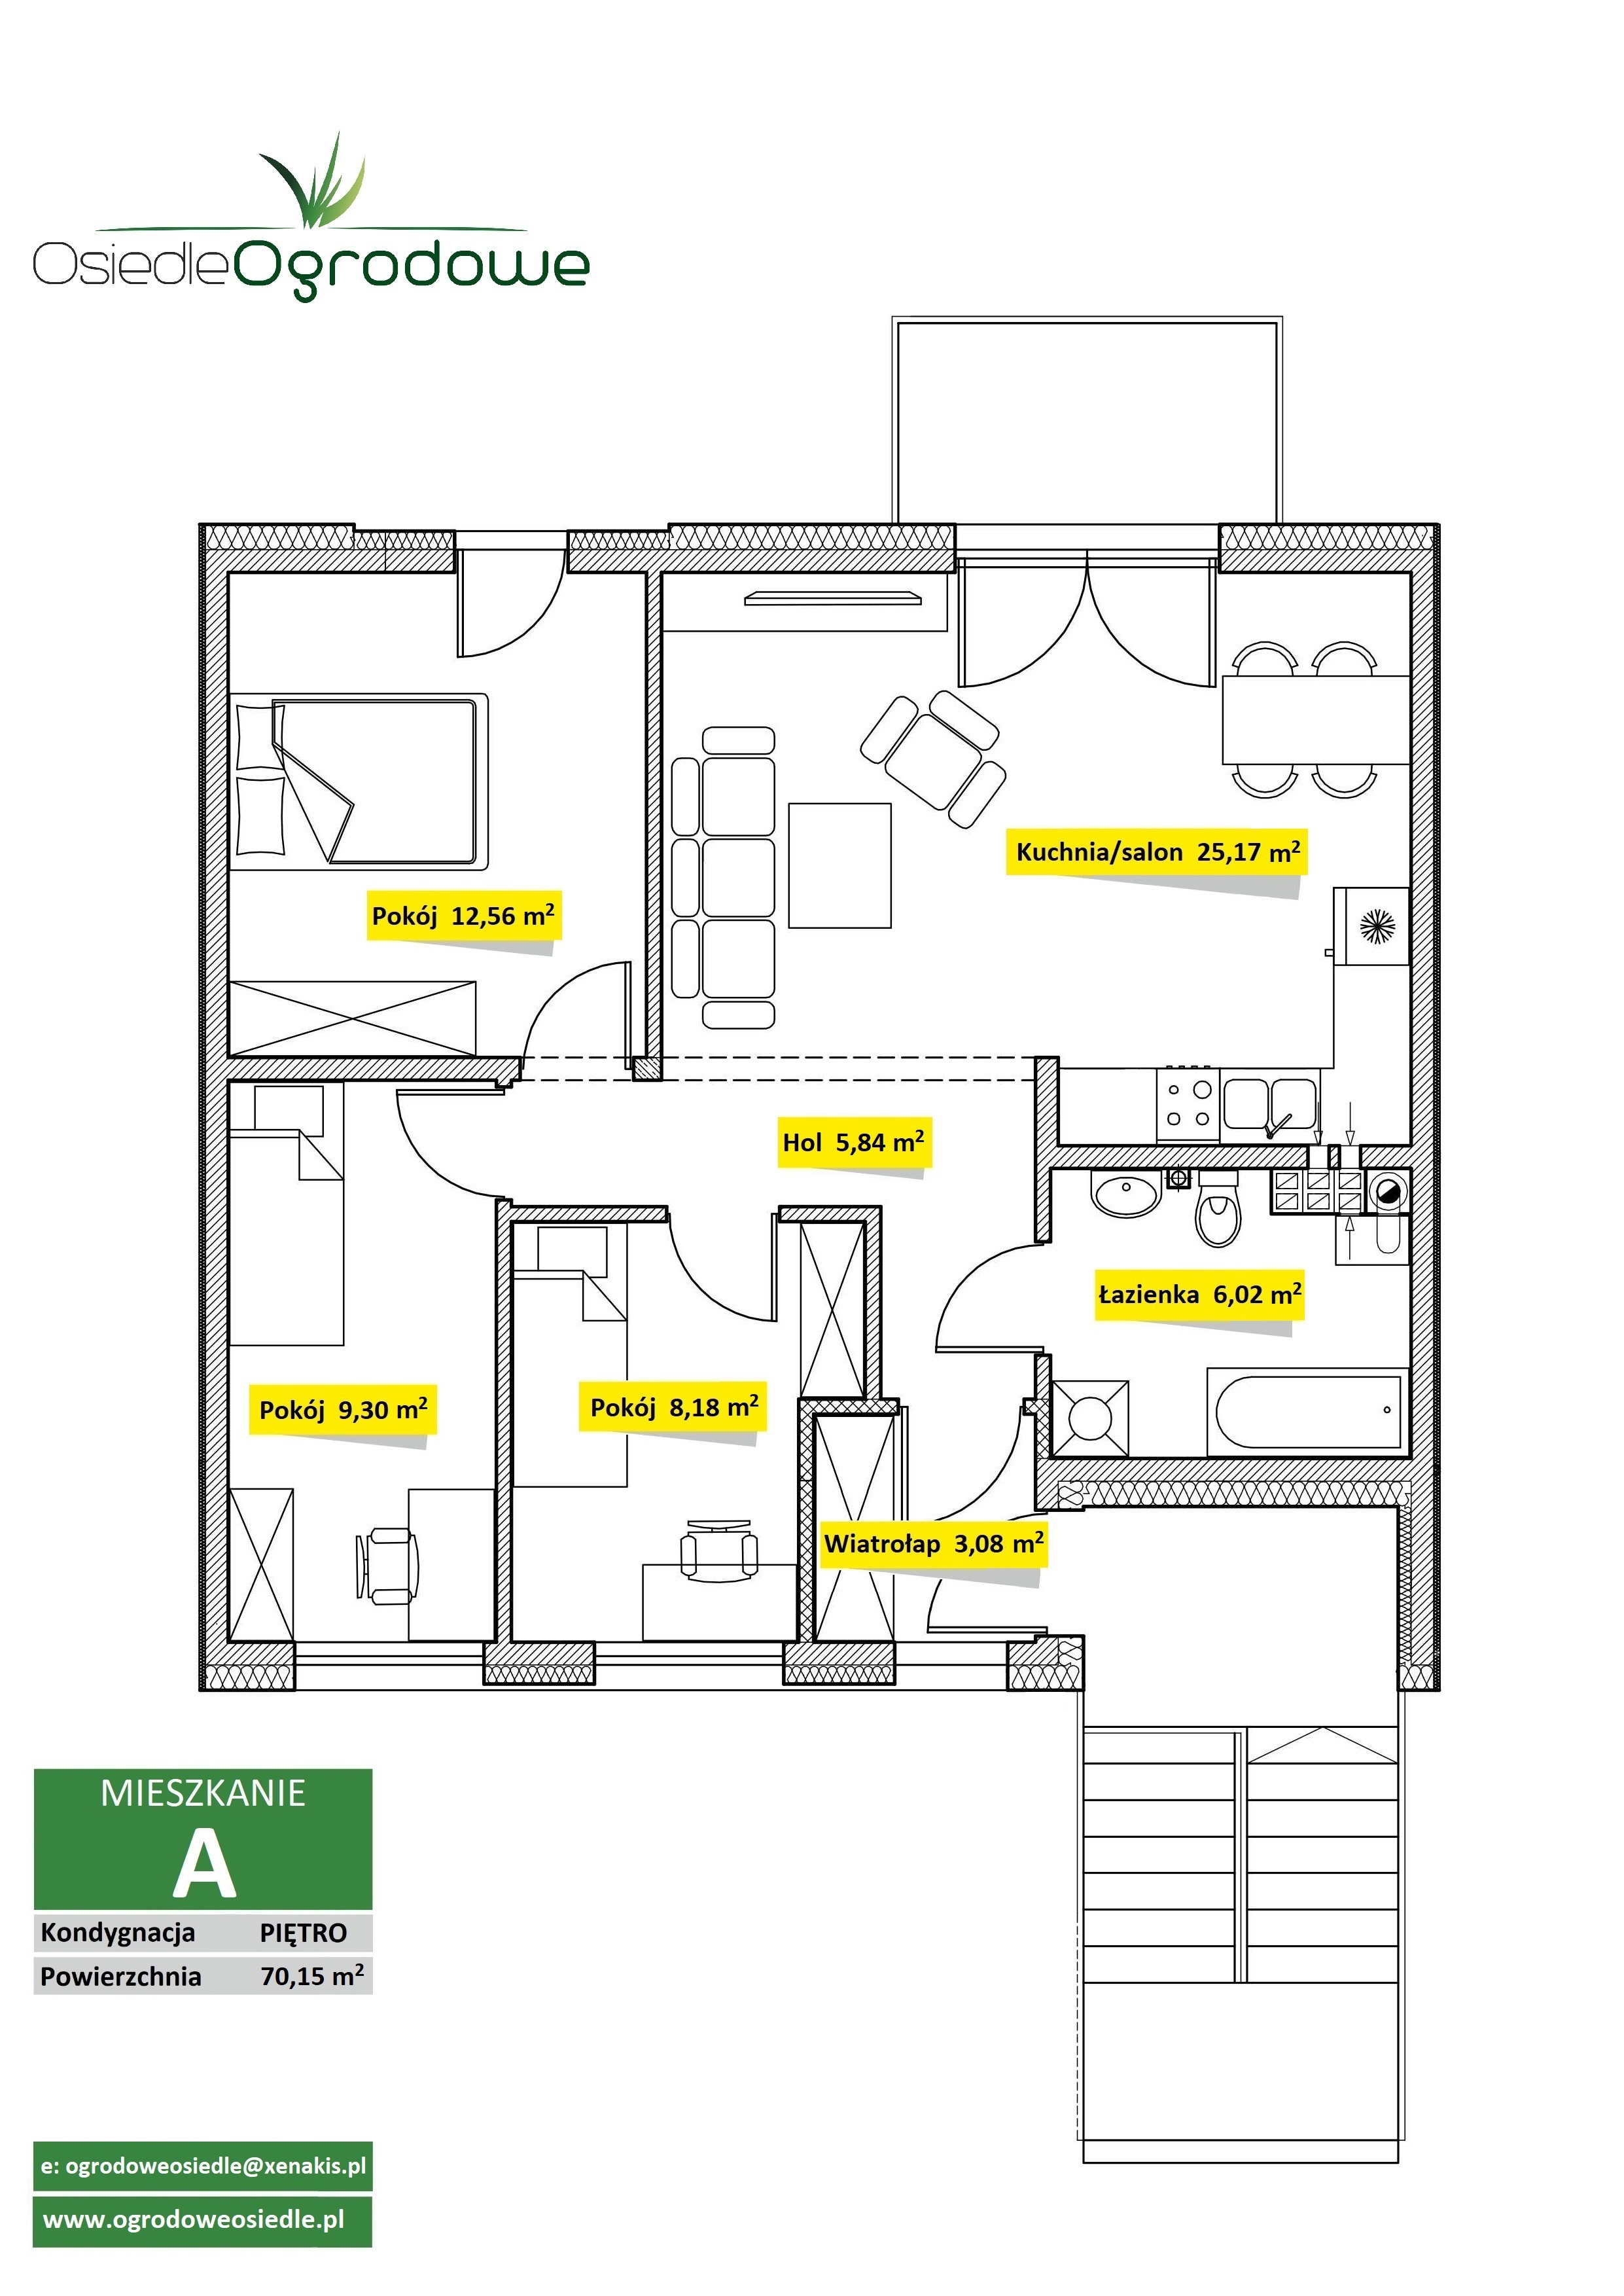 Mieszkanie 70,15 m2_piętro - Parter